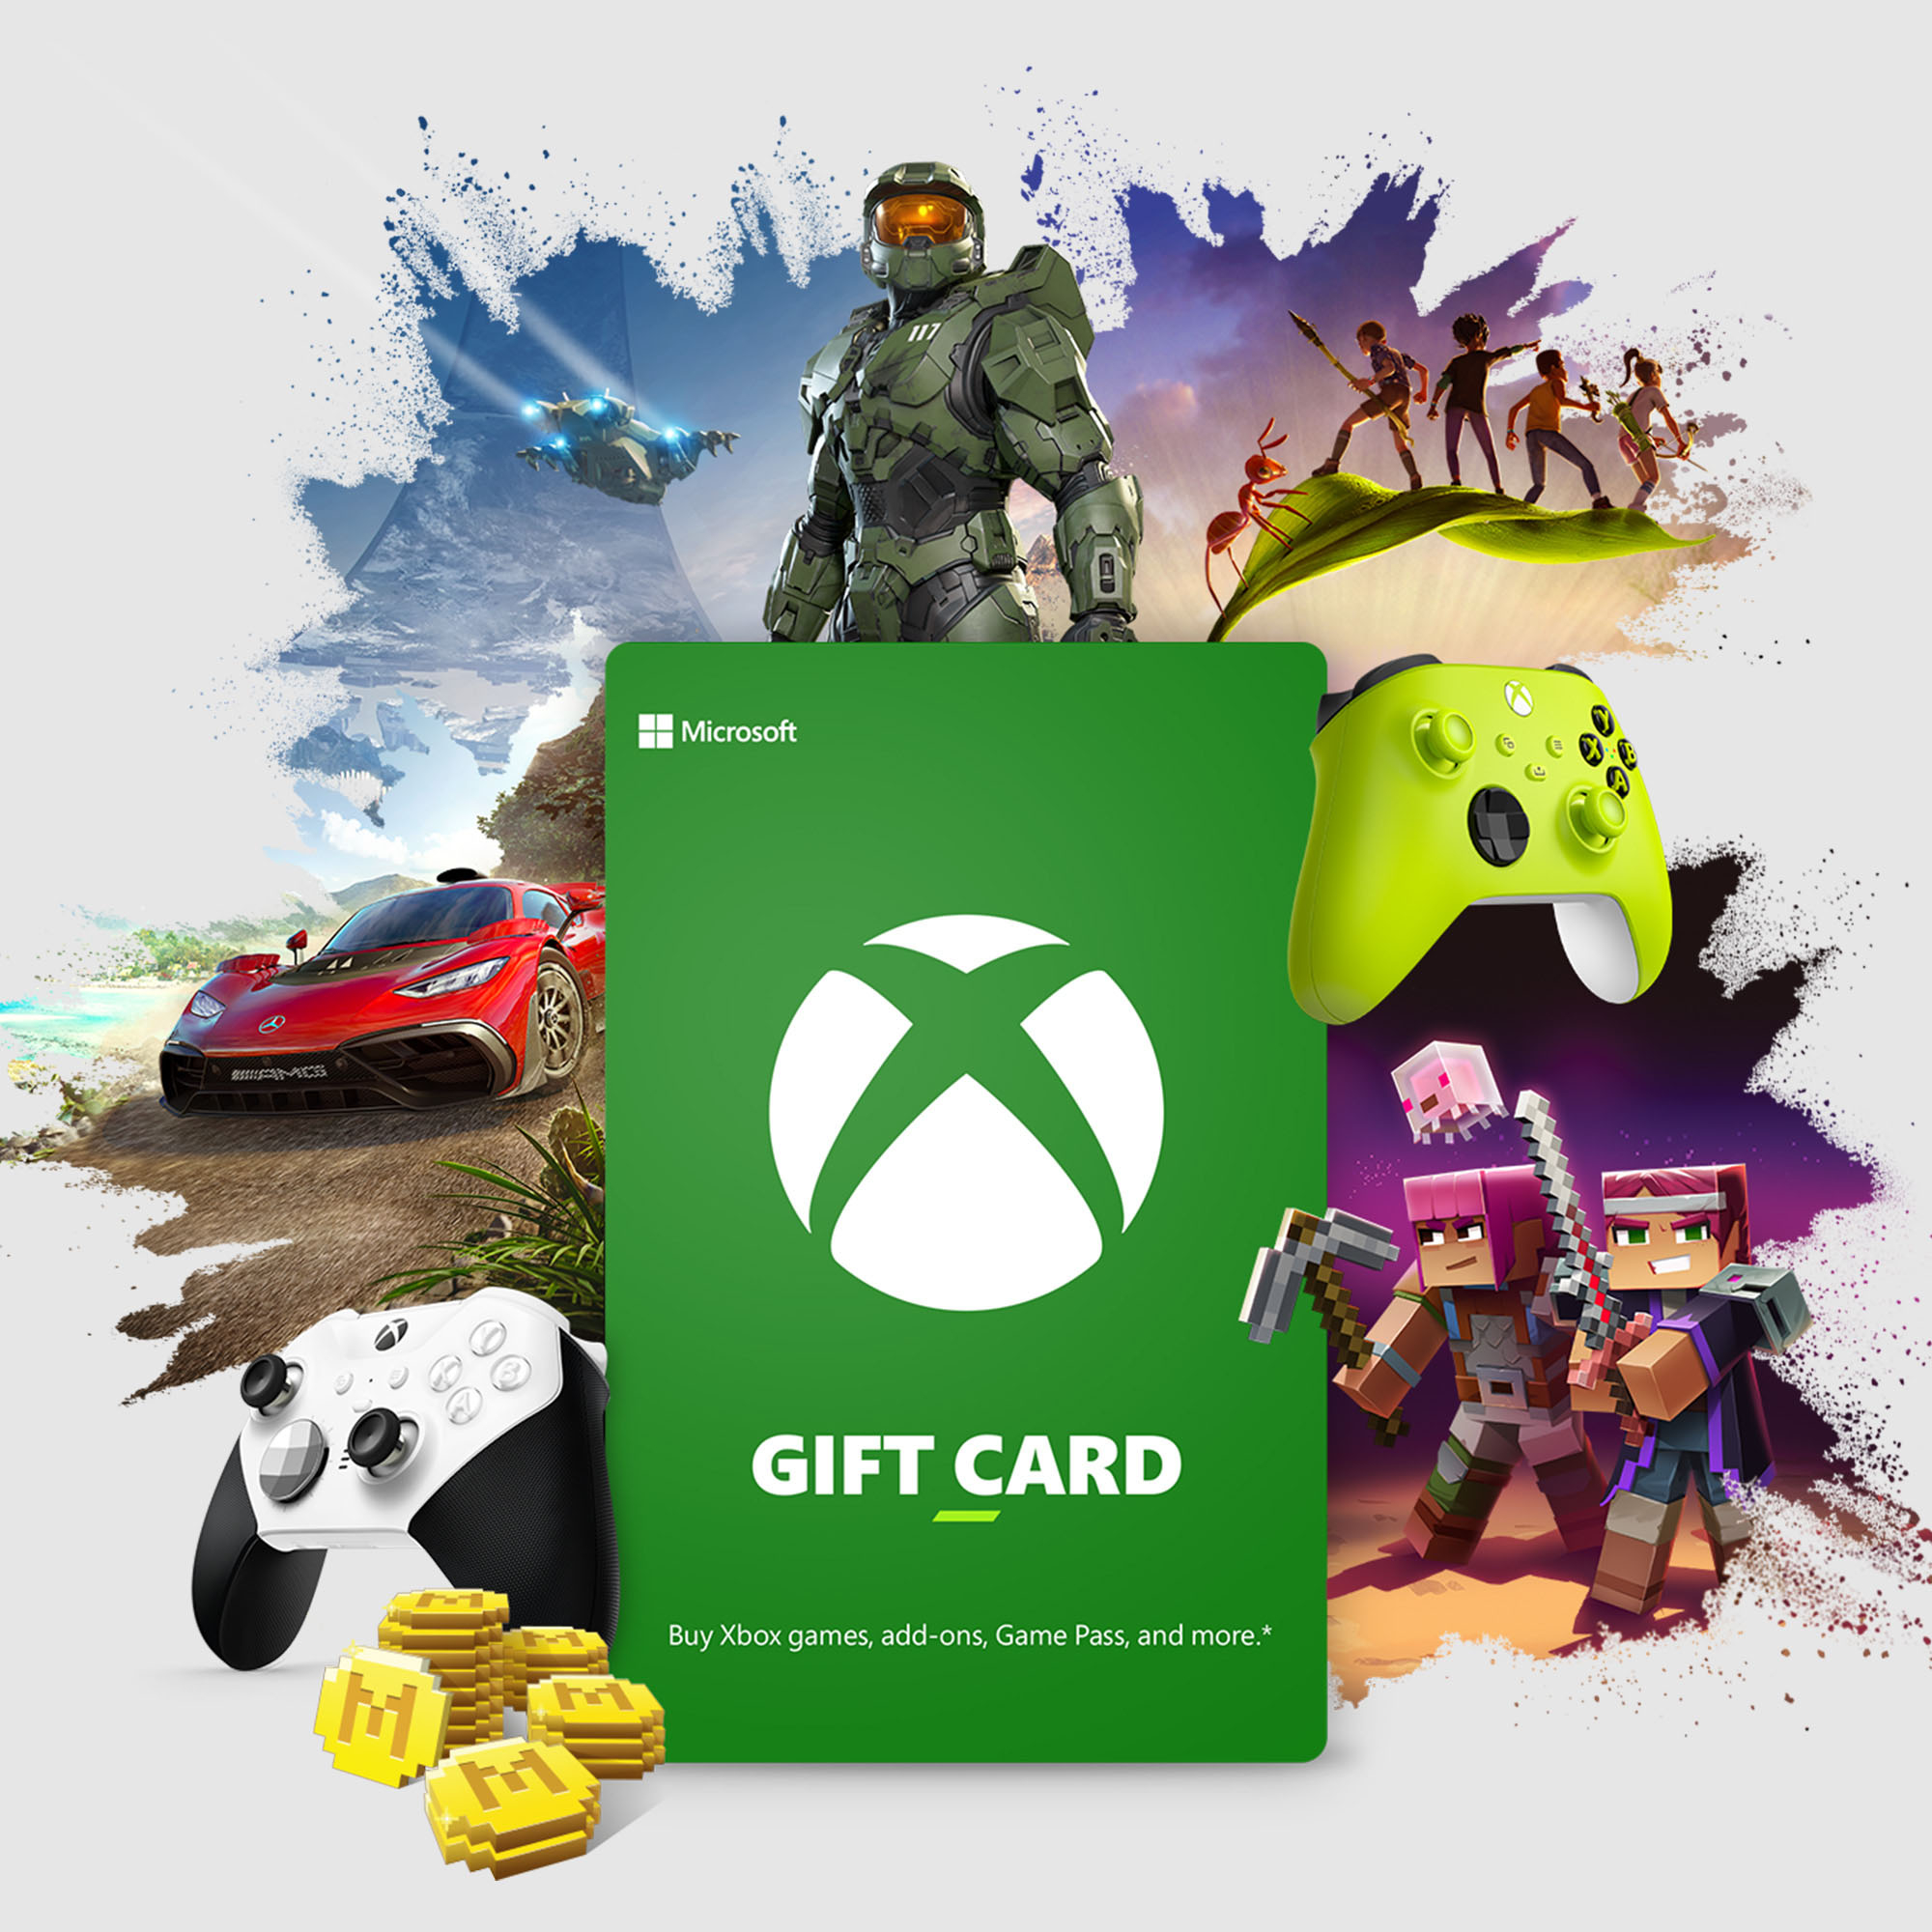 Comprar Cartão Microsoft Xbox Gift Card $25 - USA